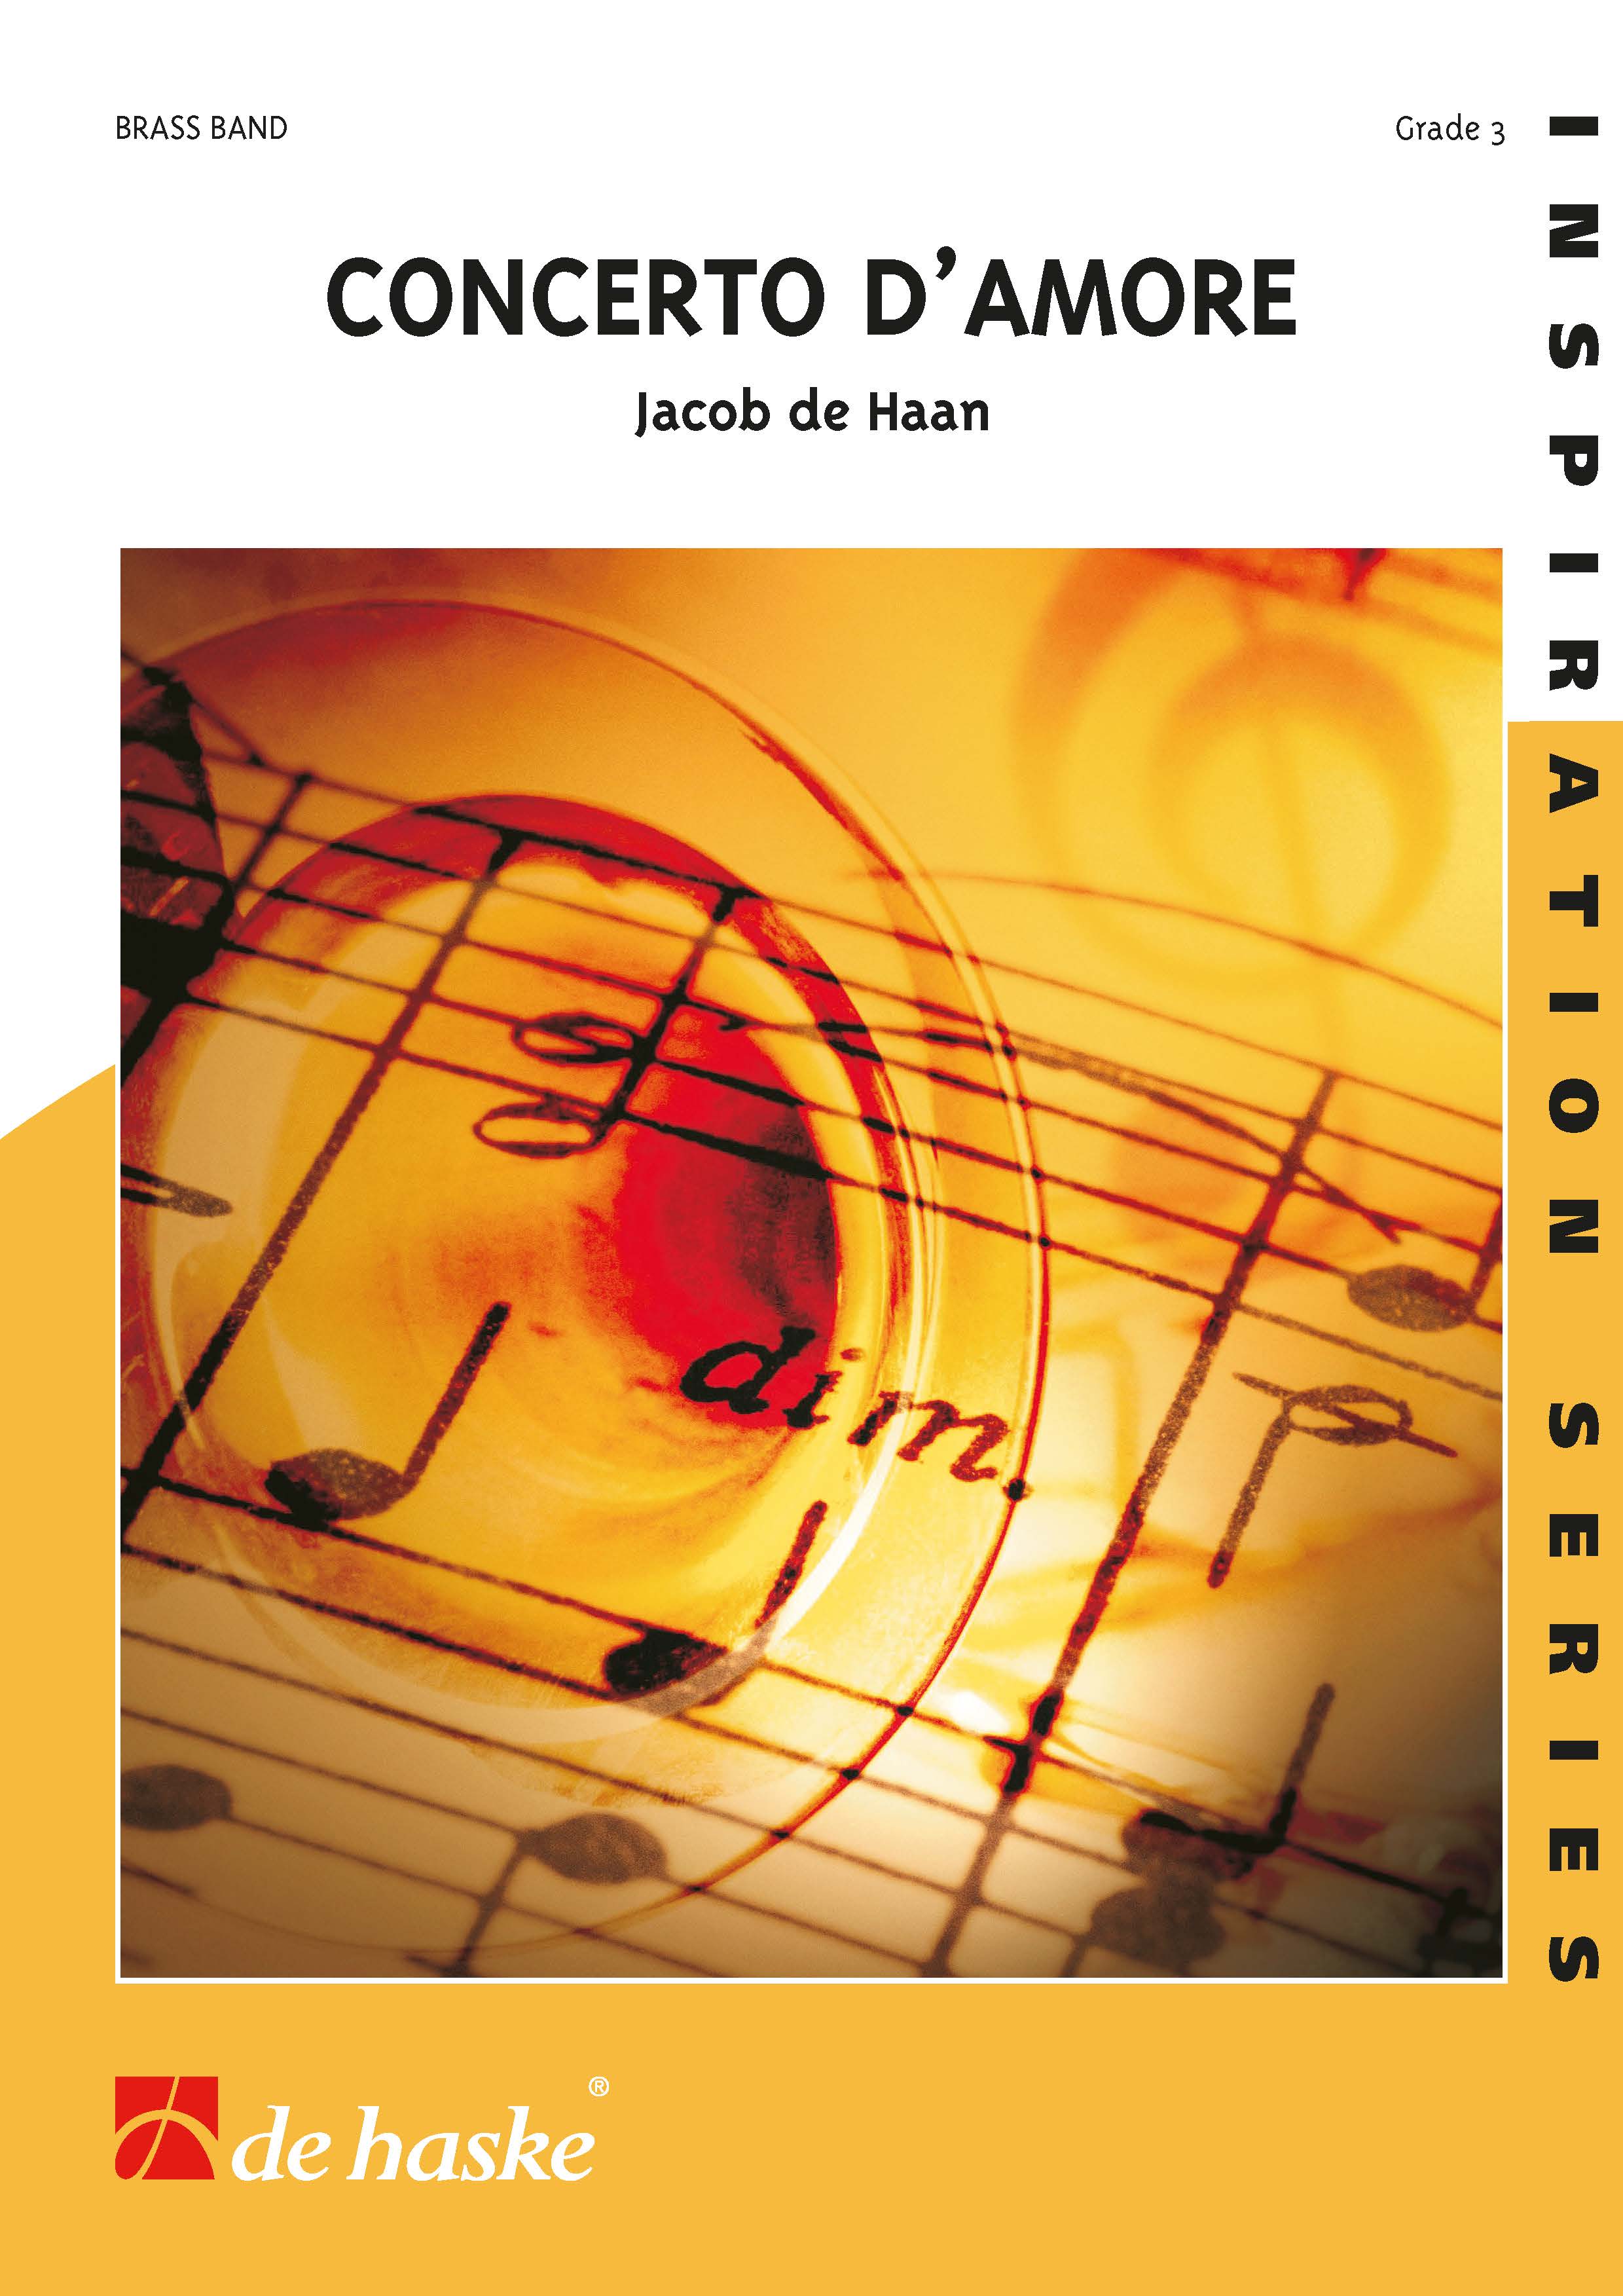 Jacob de Haan: Concerto d'Amore: Brass Band: Score